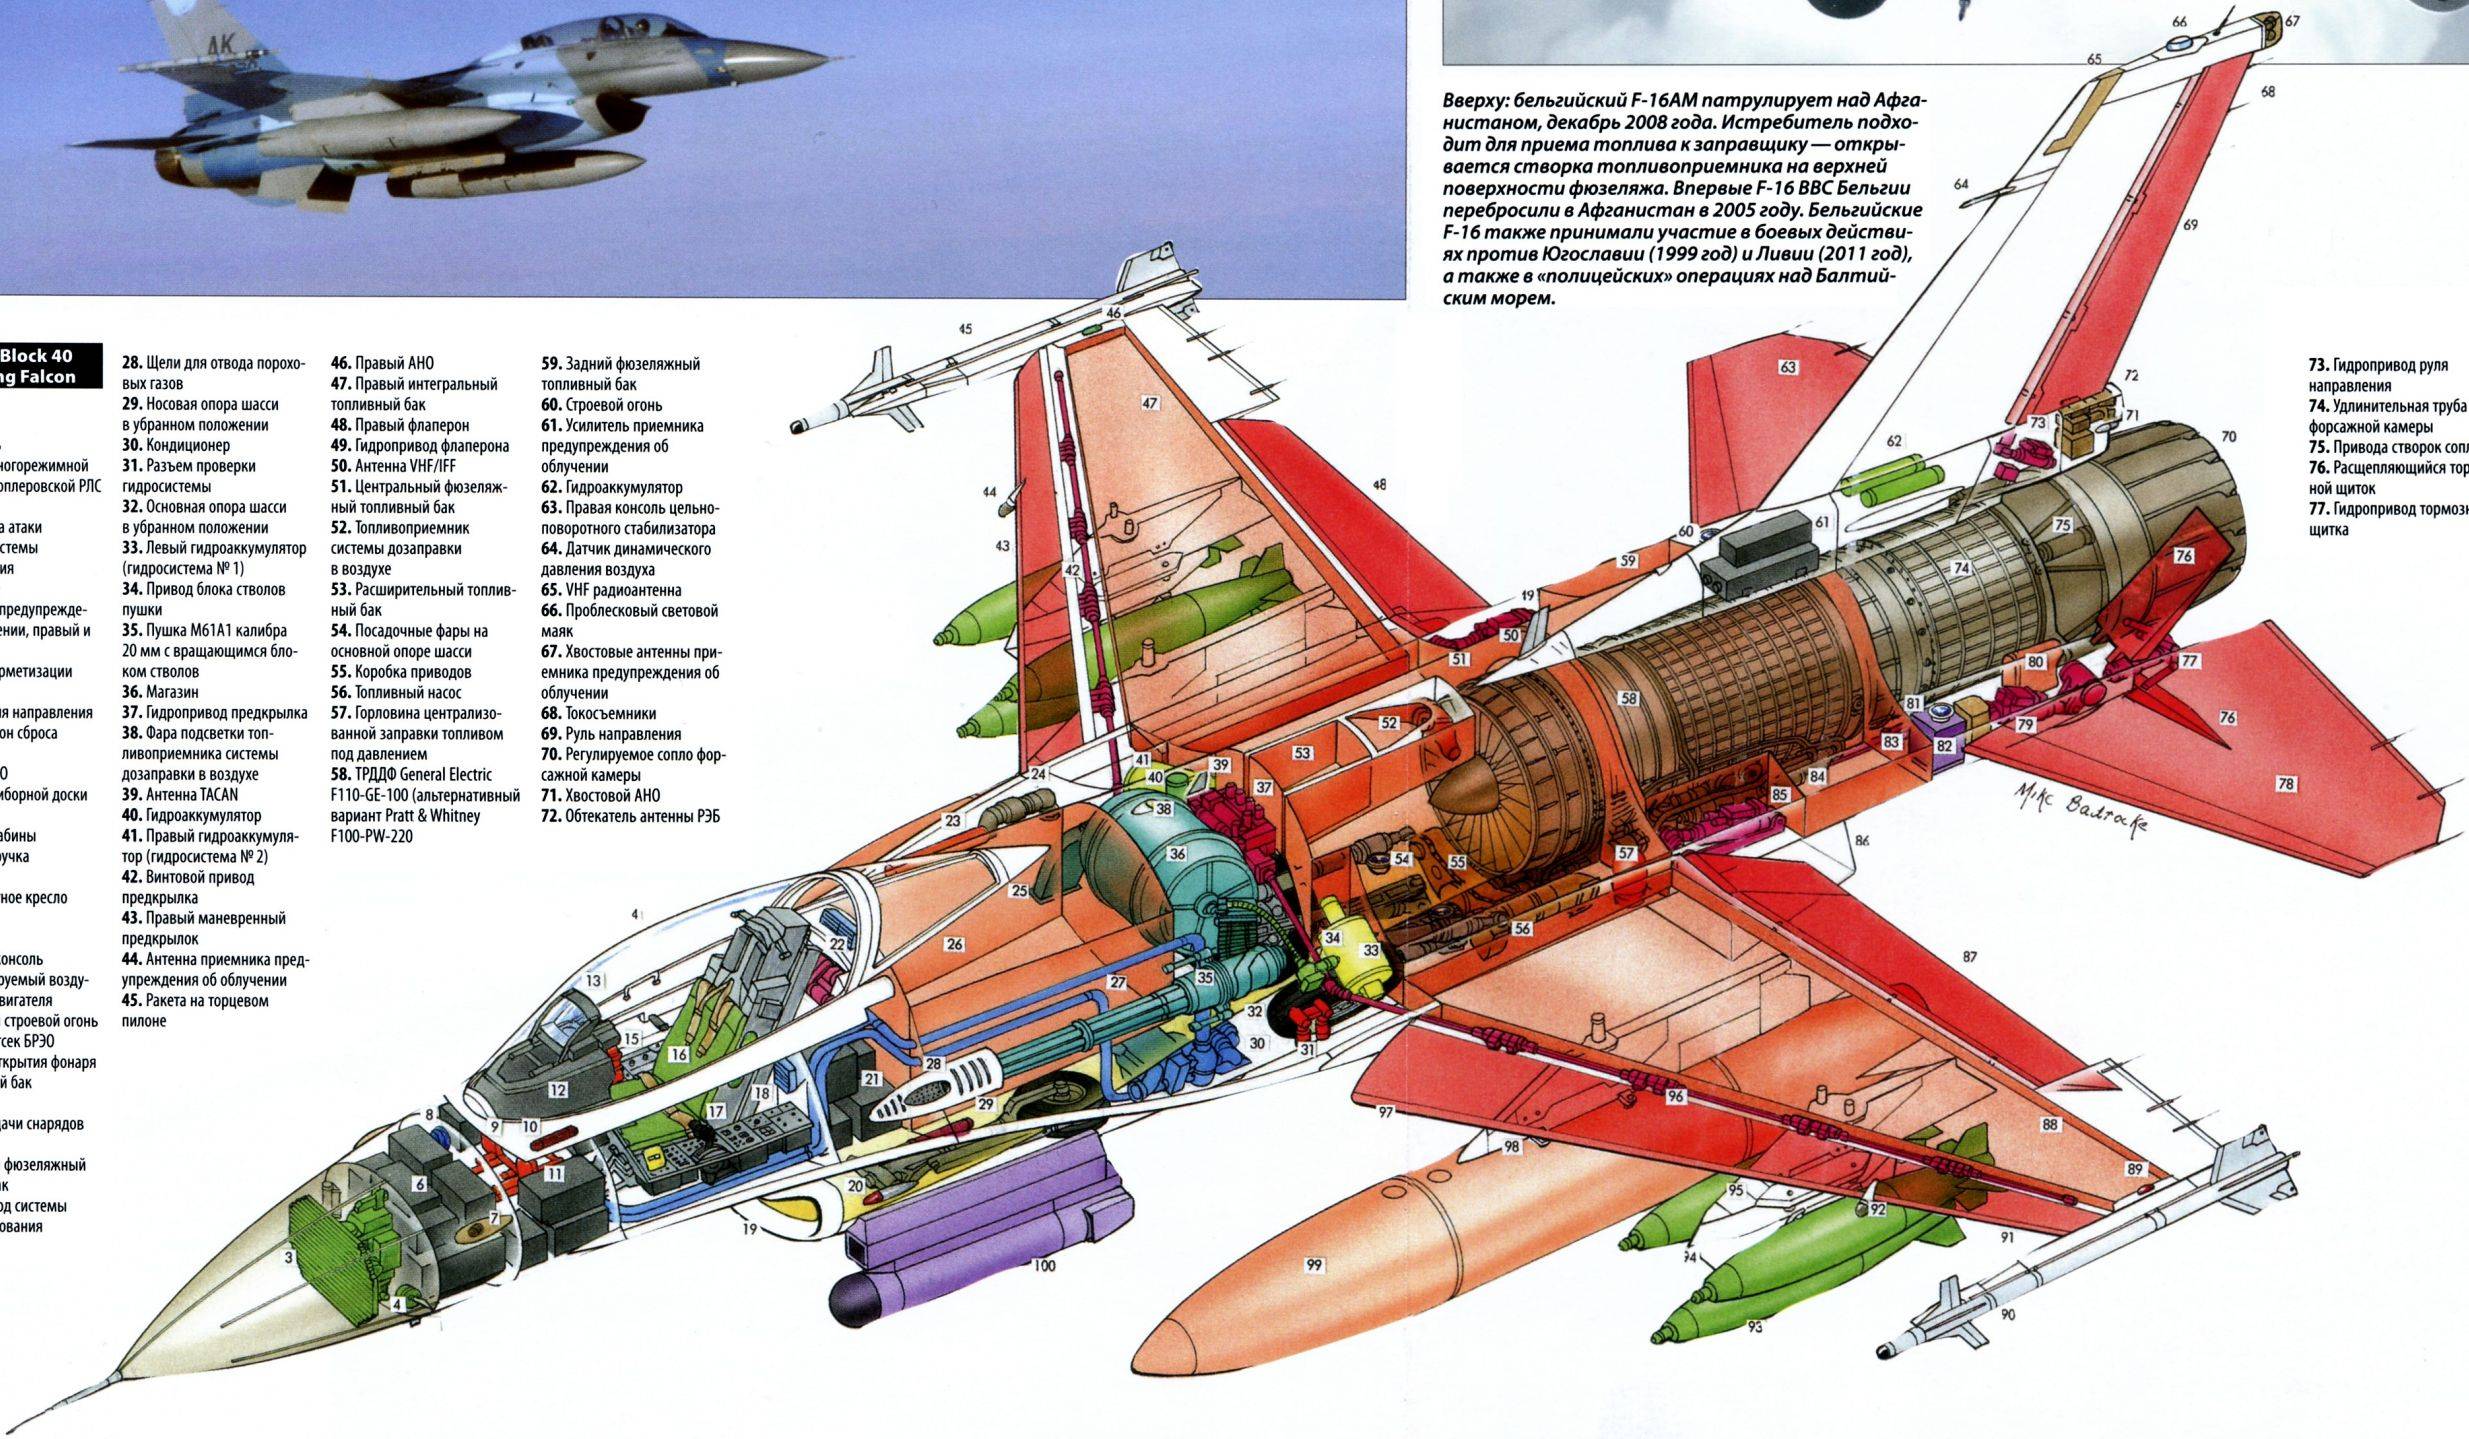 Истребитель-перехватчик су-15  , фотографии, описание, тактико-технические характеристики су-15